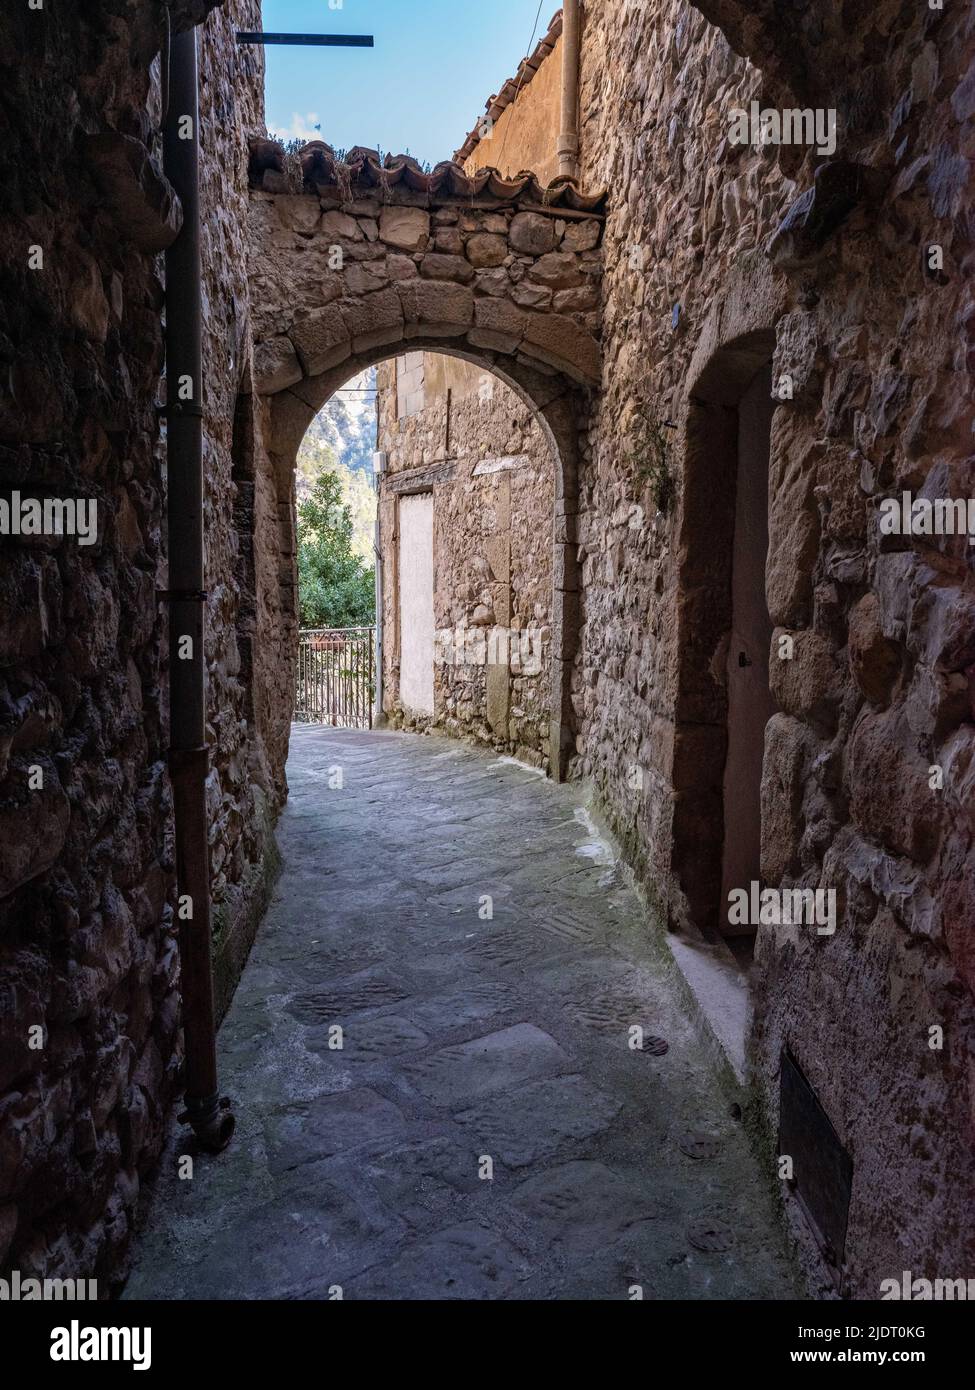 Chemin de passage voûté à travers les rues médiévales du village provençal de Villars-sur-Var dans les Alpes Maritimes du sud-est de la France Banque D'Images